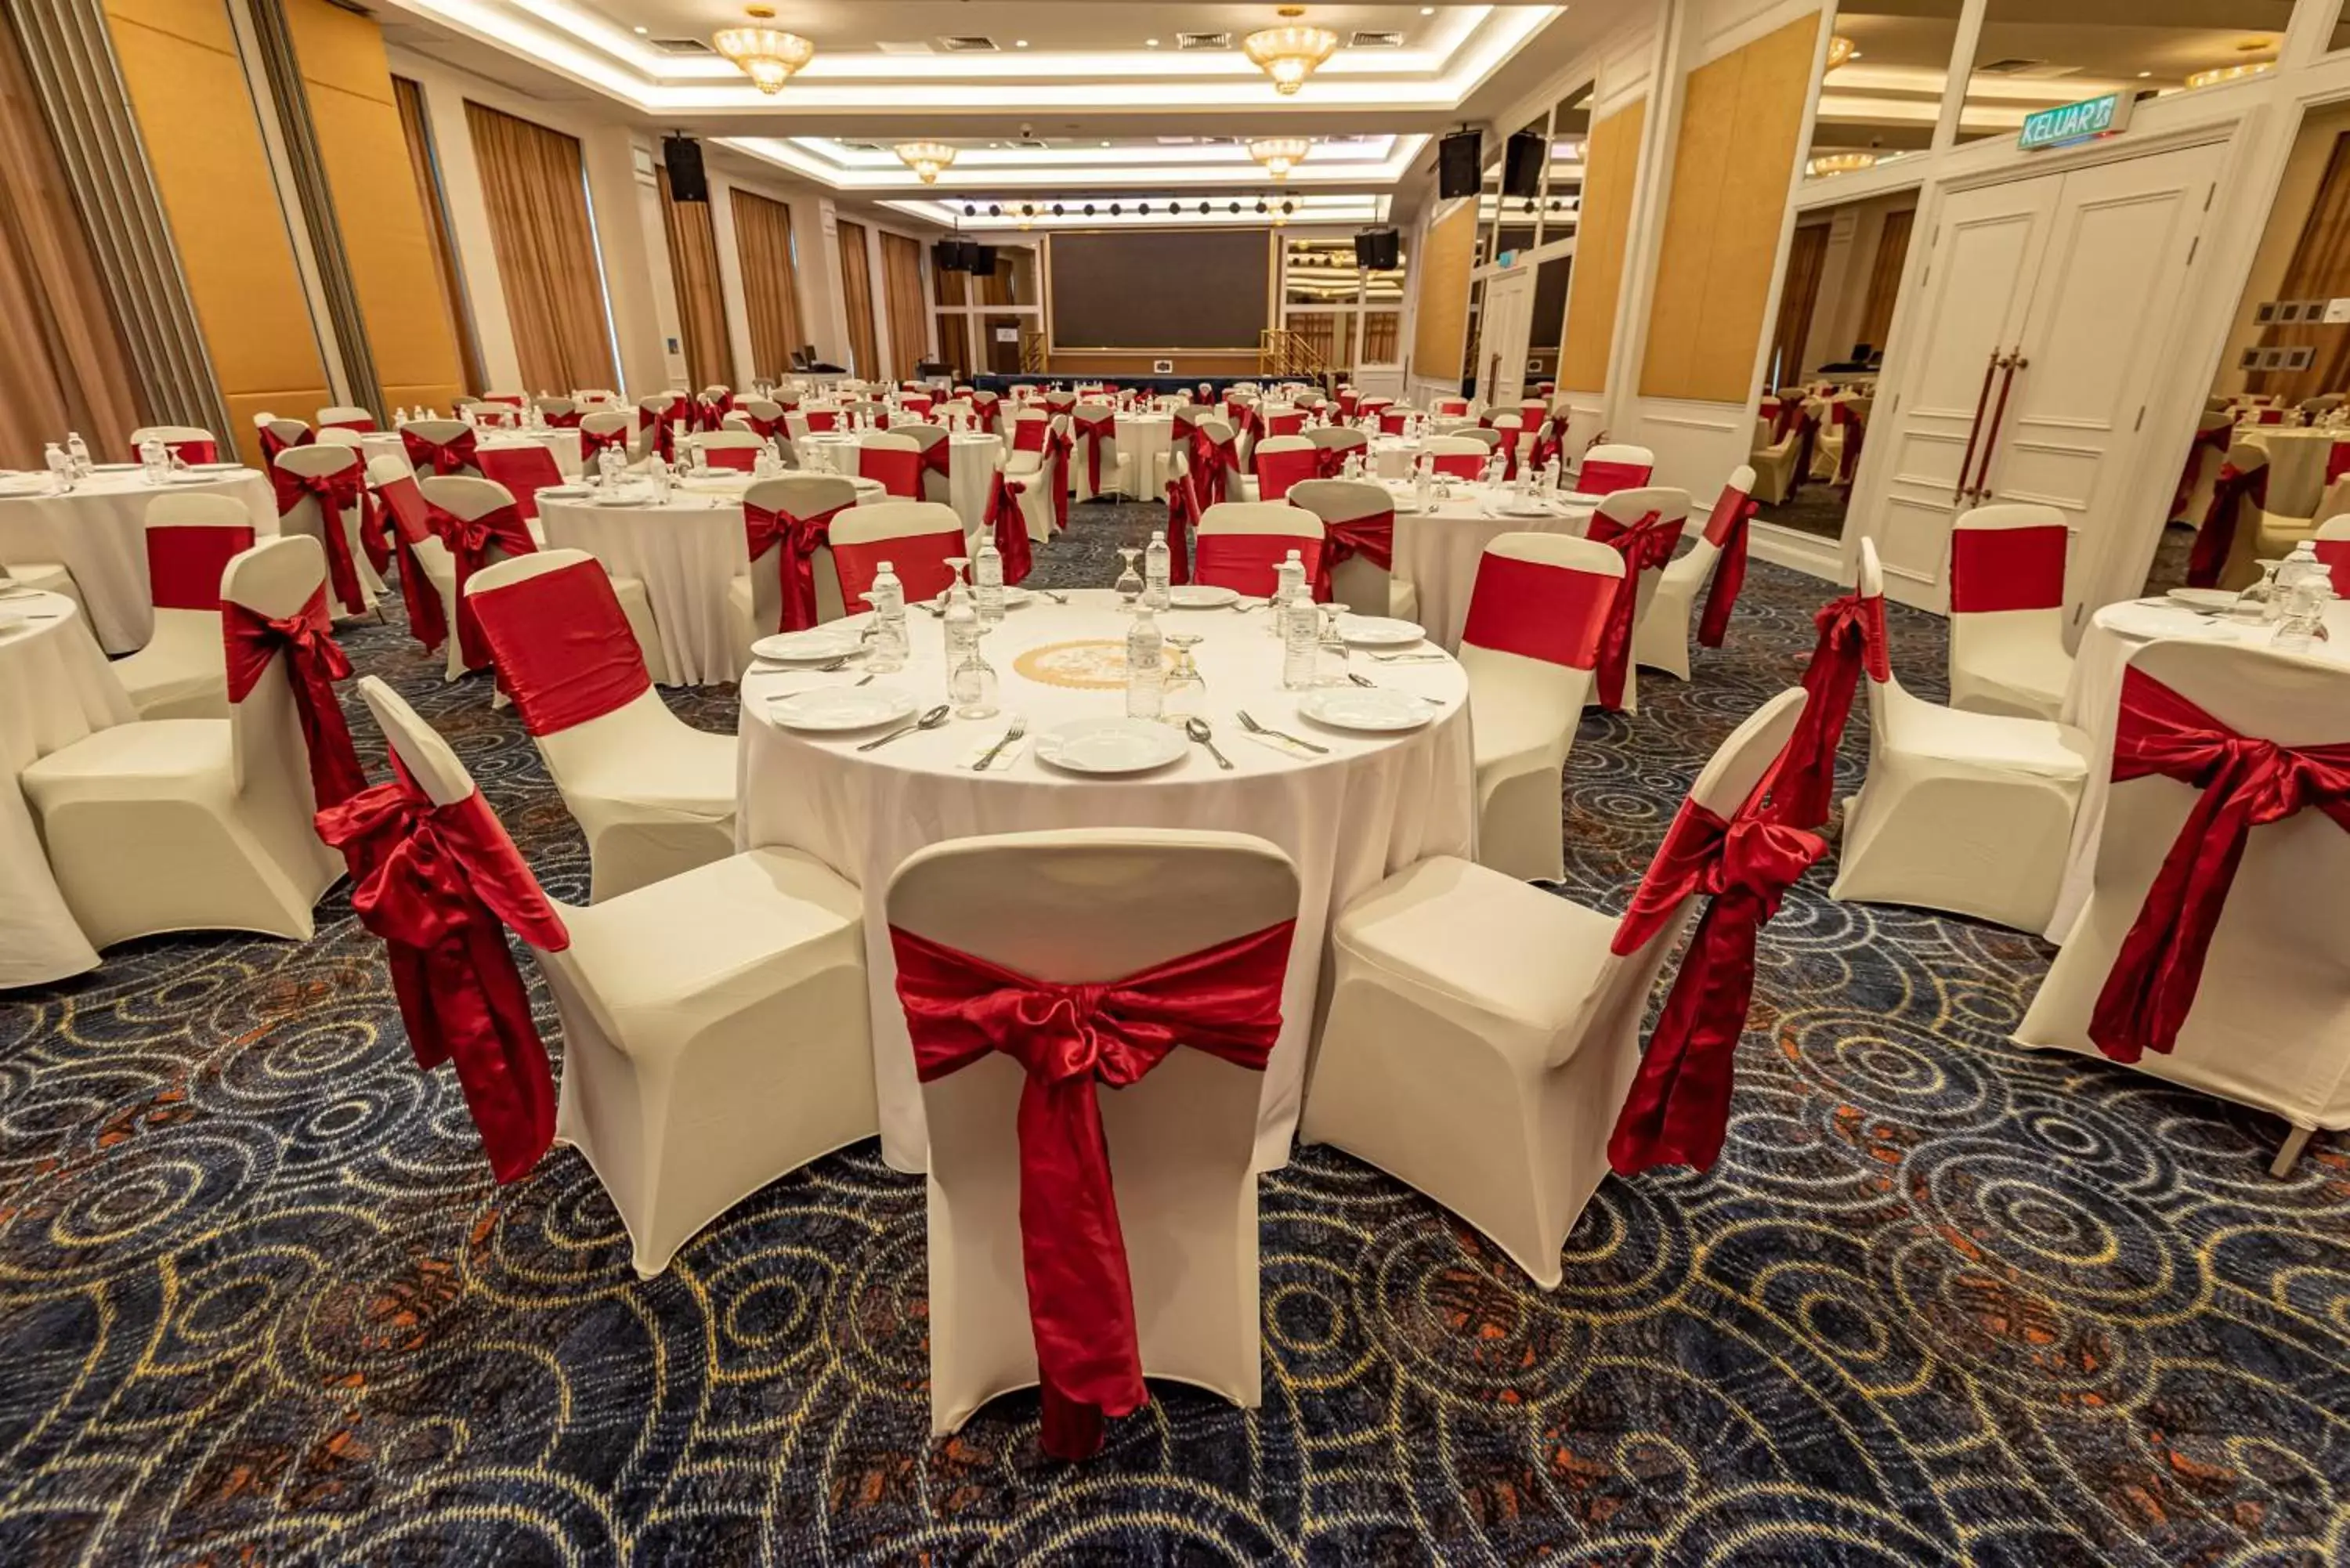 Banquet/Function facilities, Banquet Facilities in Tasik Villa International Resort